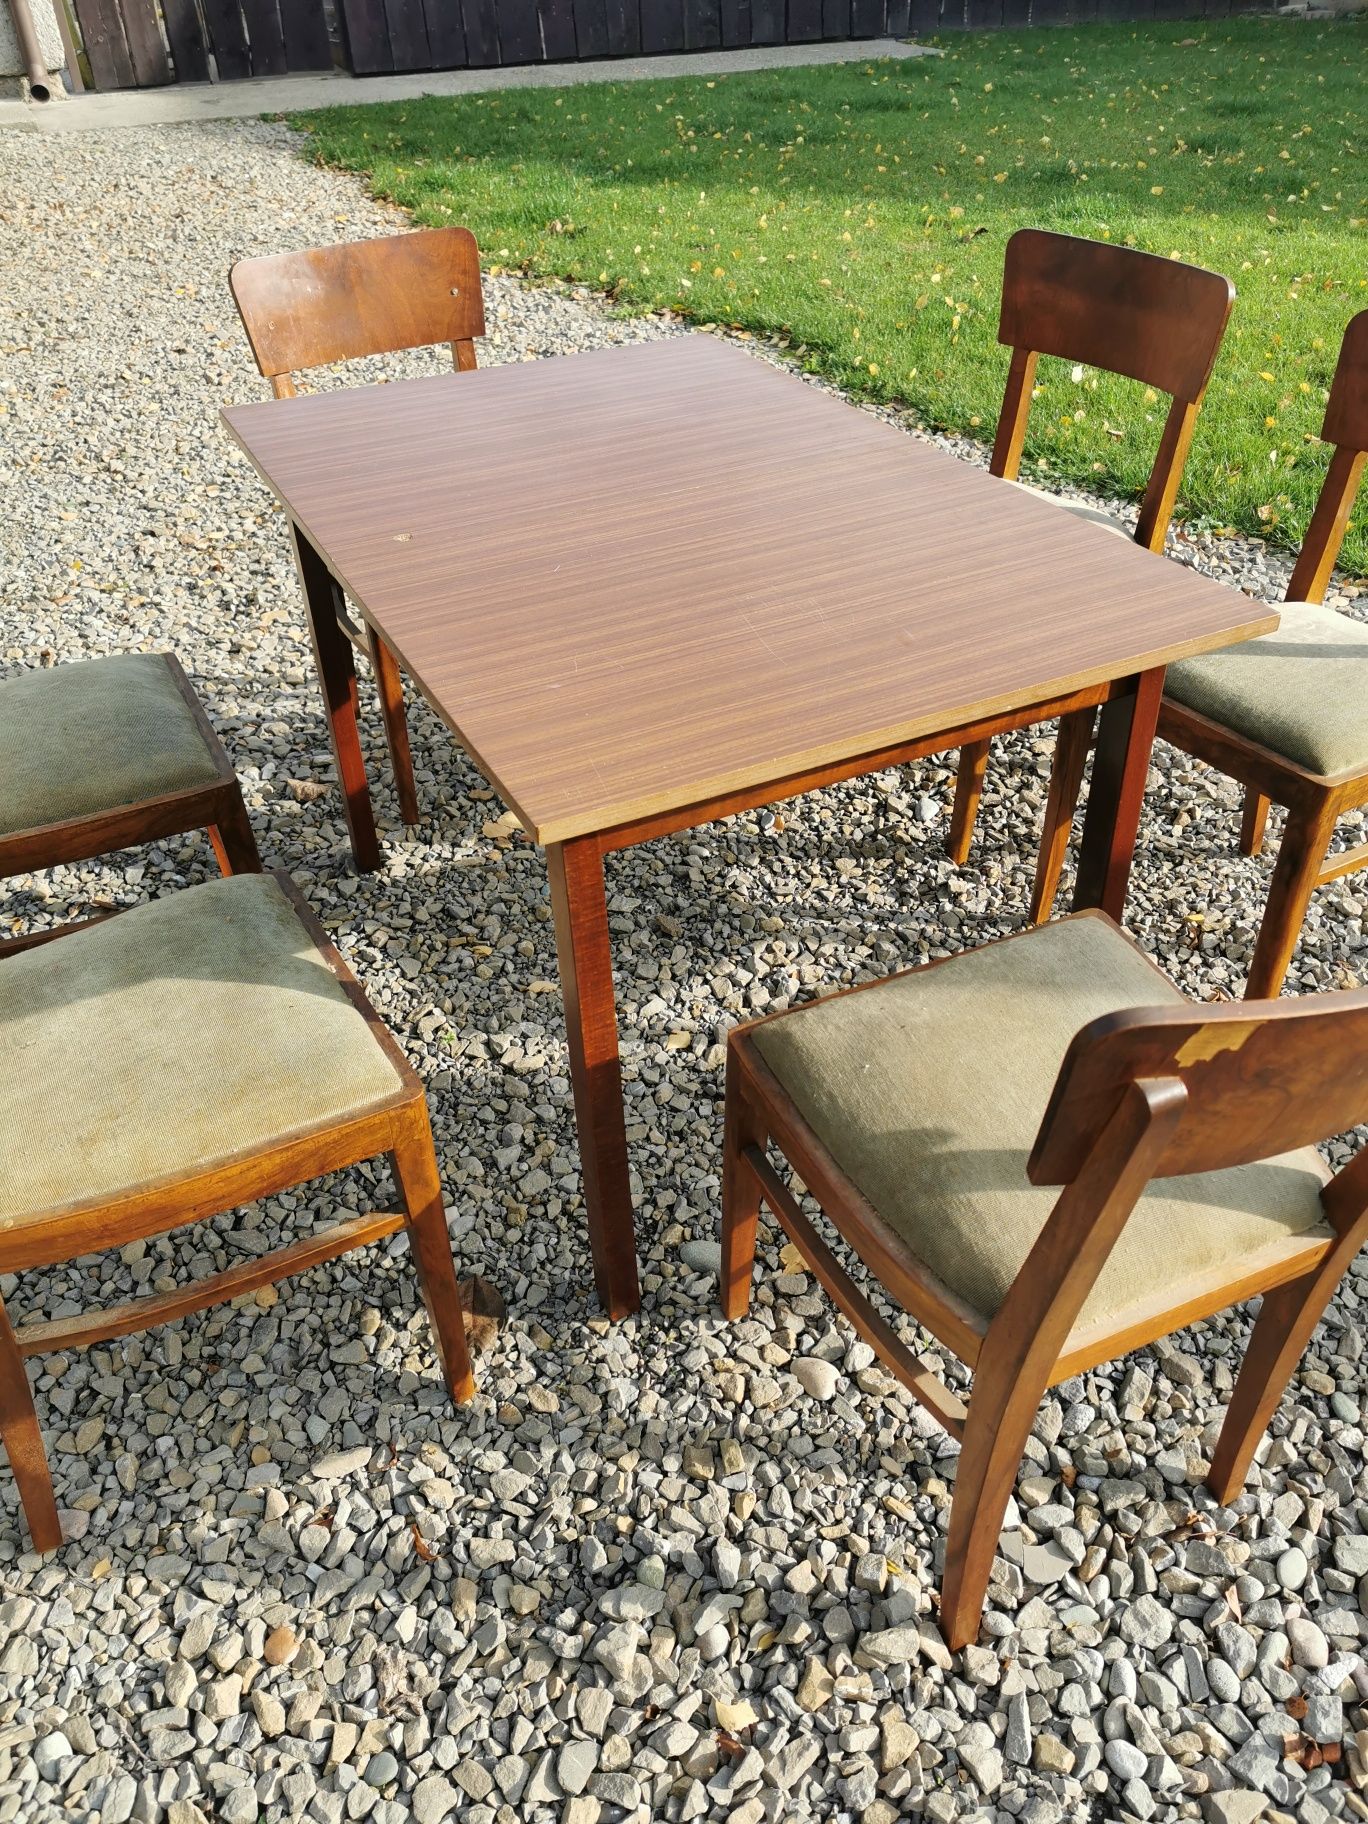 Drewniany stół 6 krzeseł komplet. Do odrestaurowania